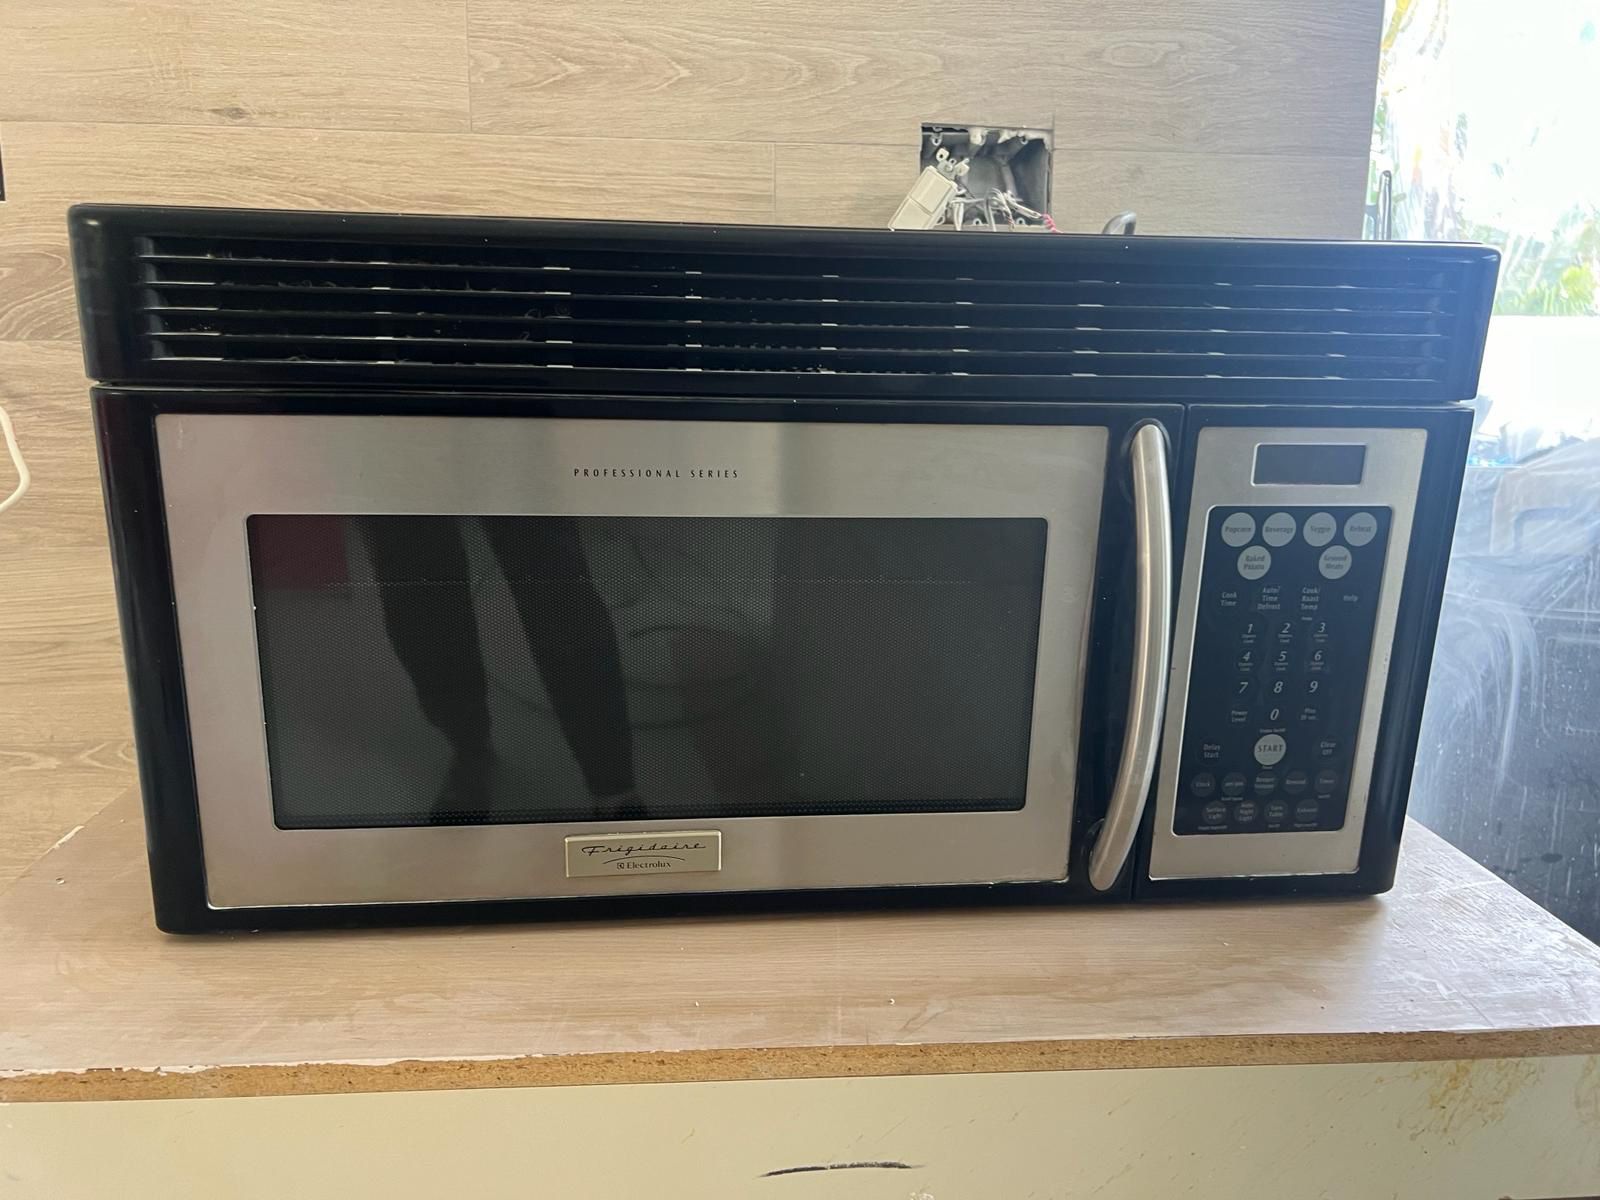 Microwave Frigidare